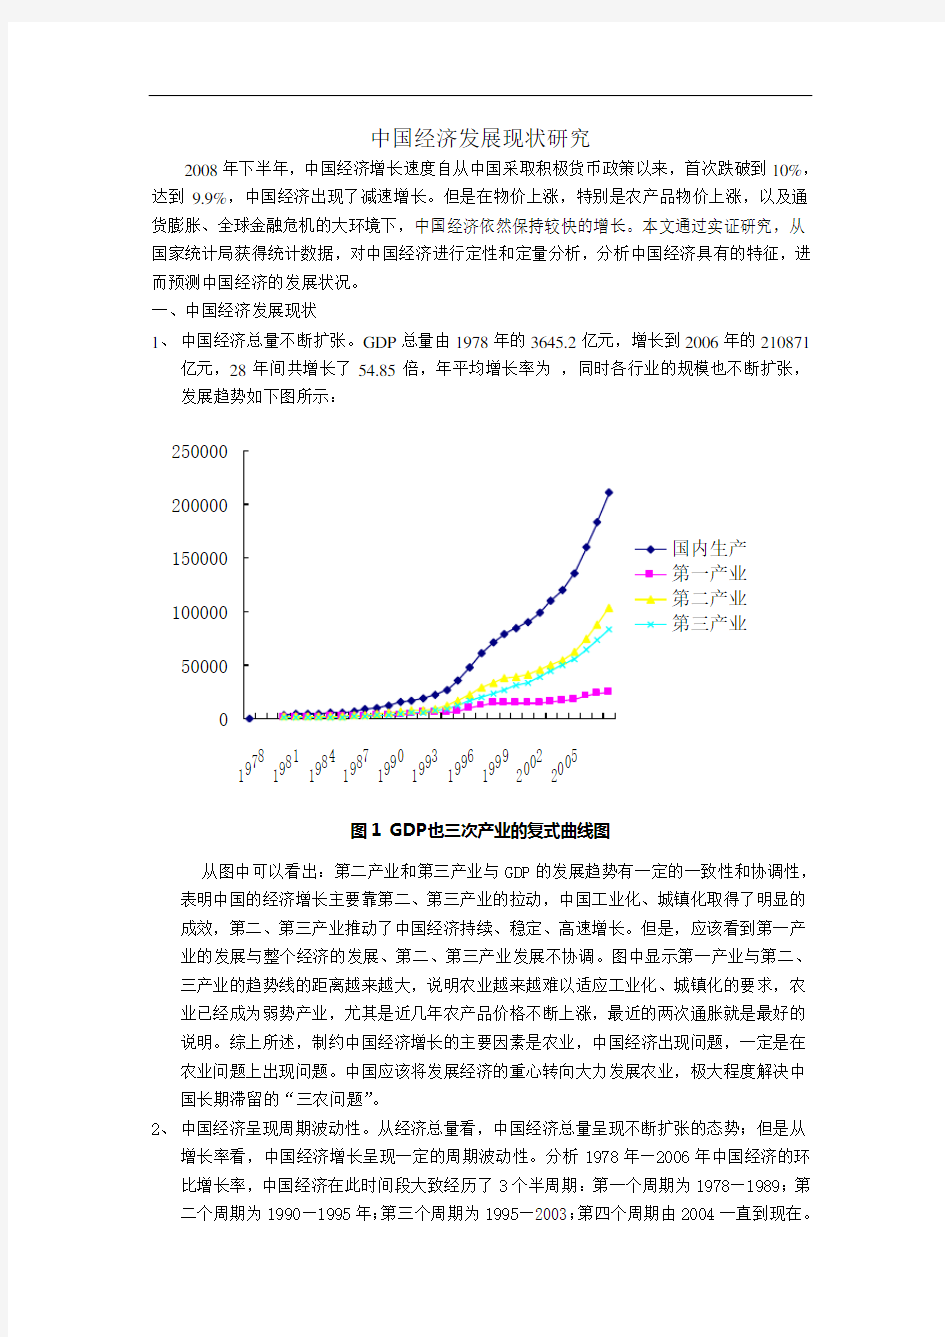 中国经济发展现状研究